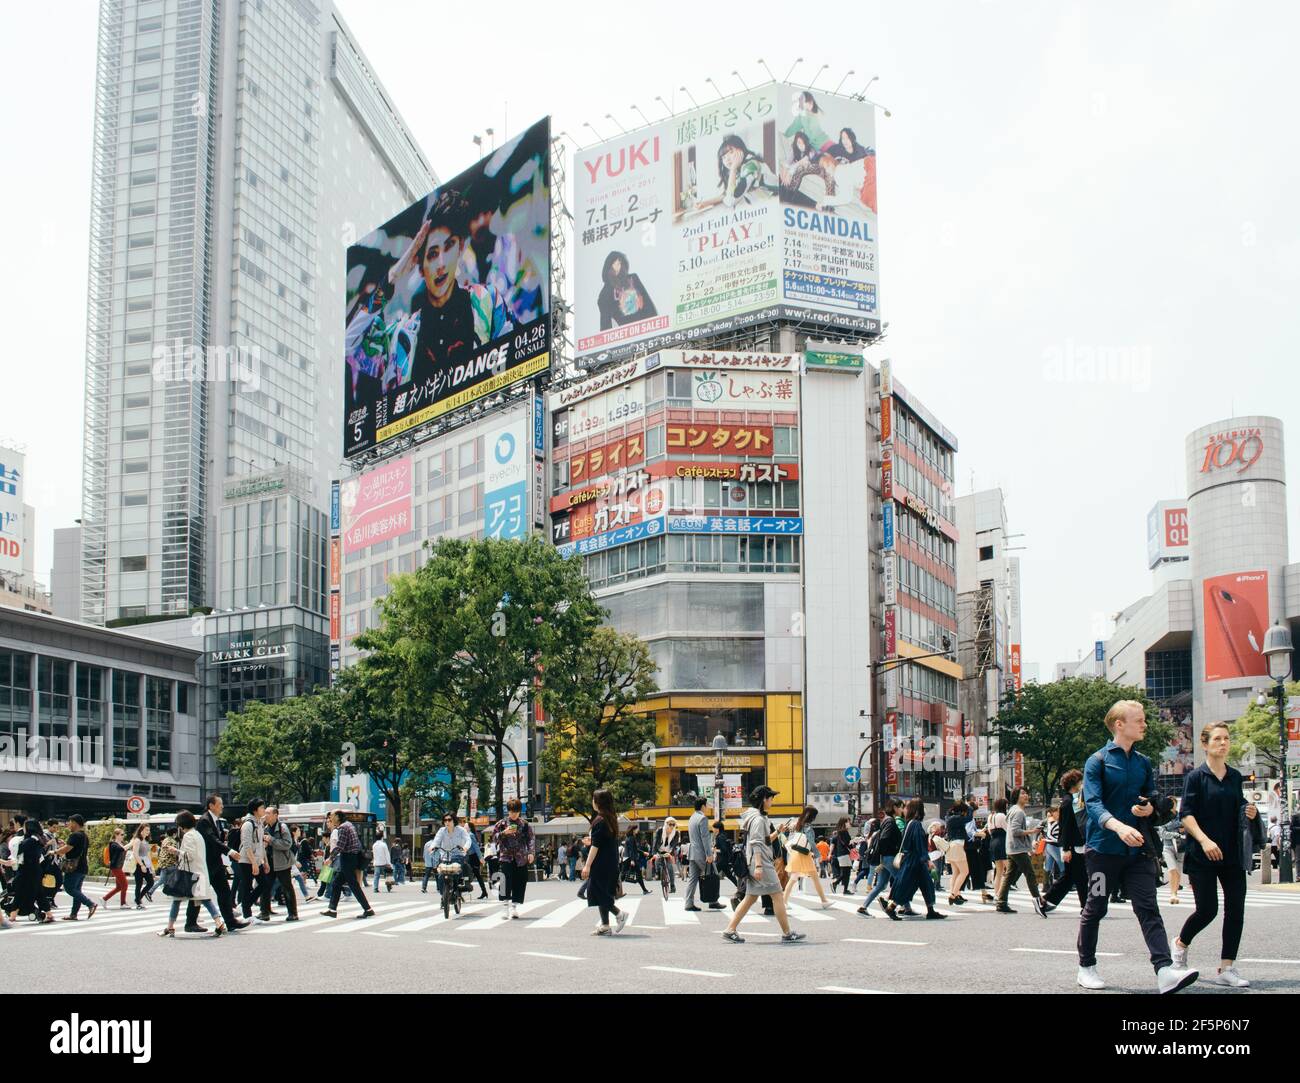 Shibuya, Tokyo, Giappone - Shibuya scramble crossing. Molte persone attraversano la strada in una delle zone più trafficate del mondo. Foto Stock